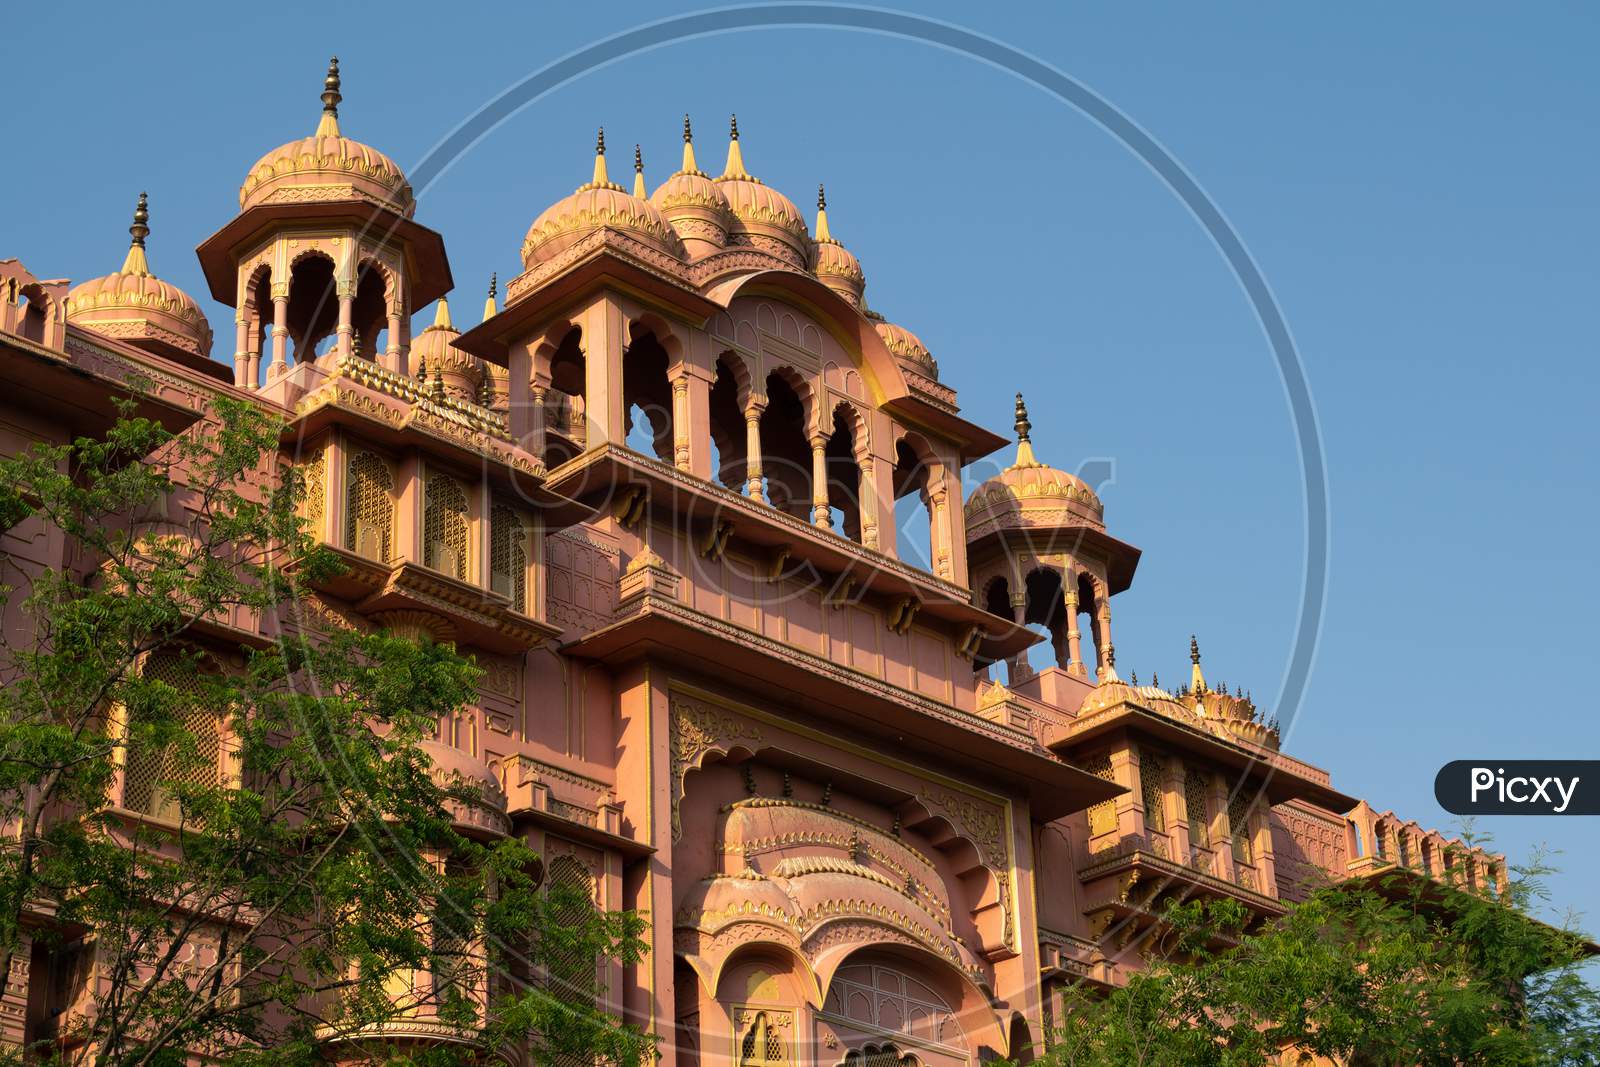 Architecture of Patrika Gate near Jawahar Circle, Jaipur